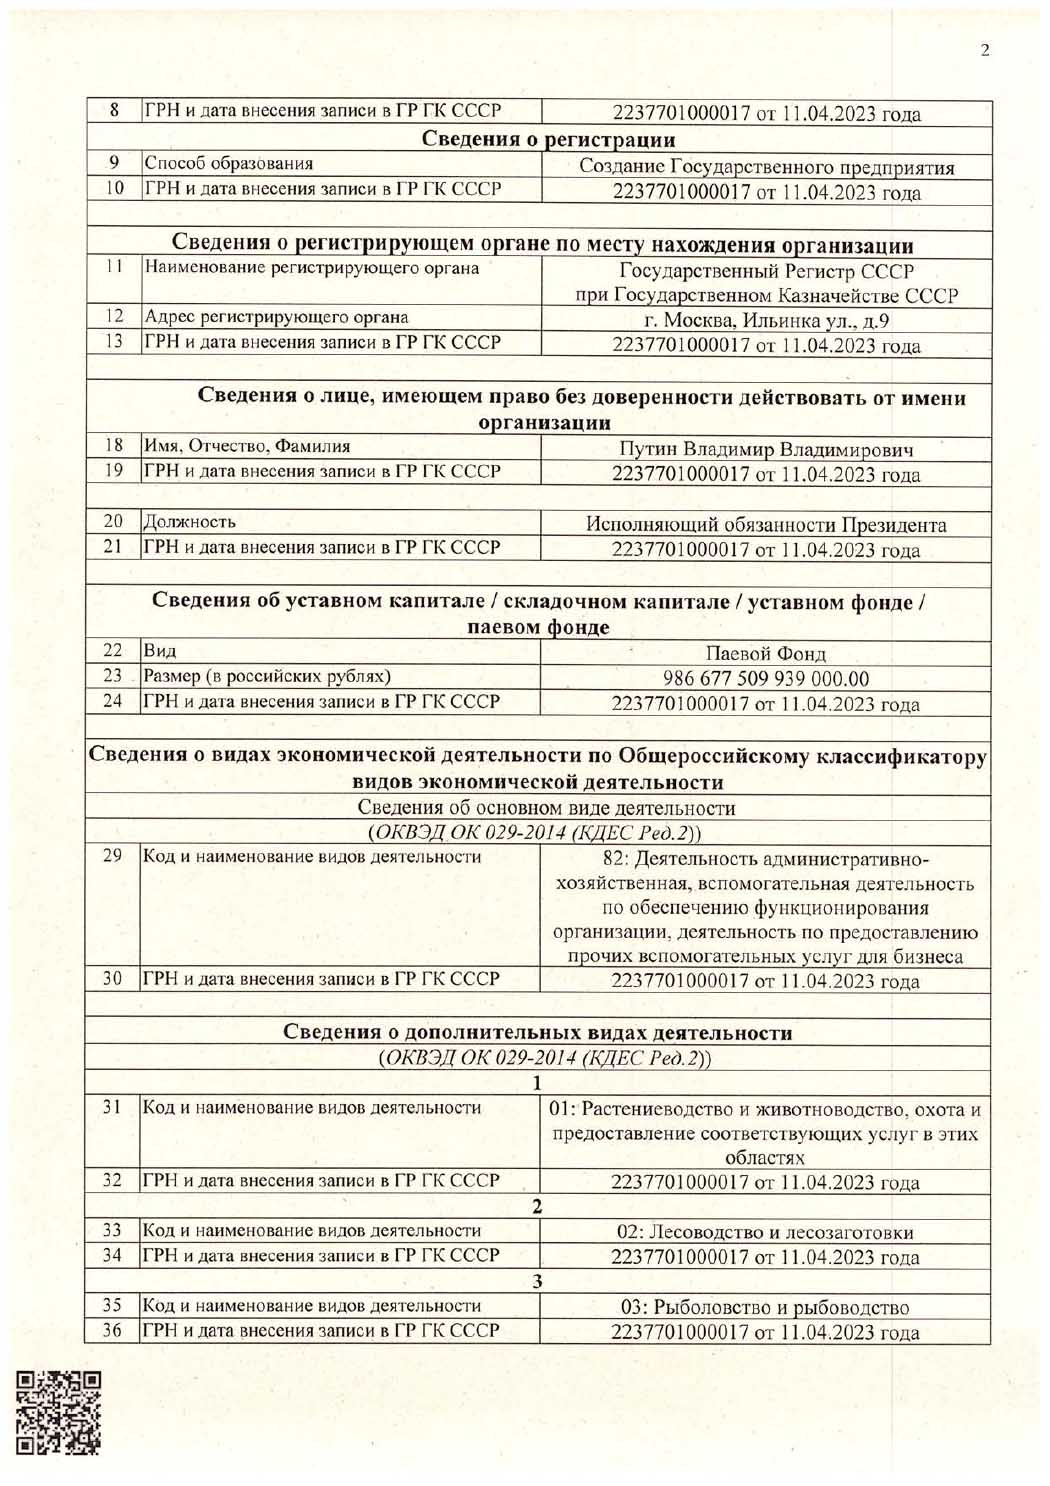 Выписка из Государственного реестра Государственного Регистра Союза Советских Социалистических Республик при Государственном Казначействе СССР